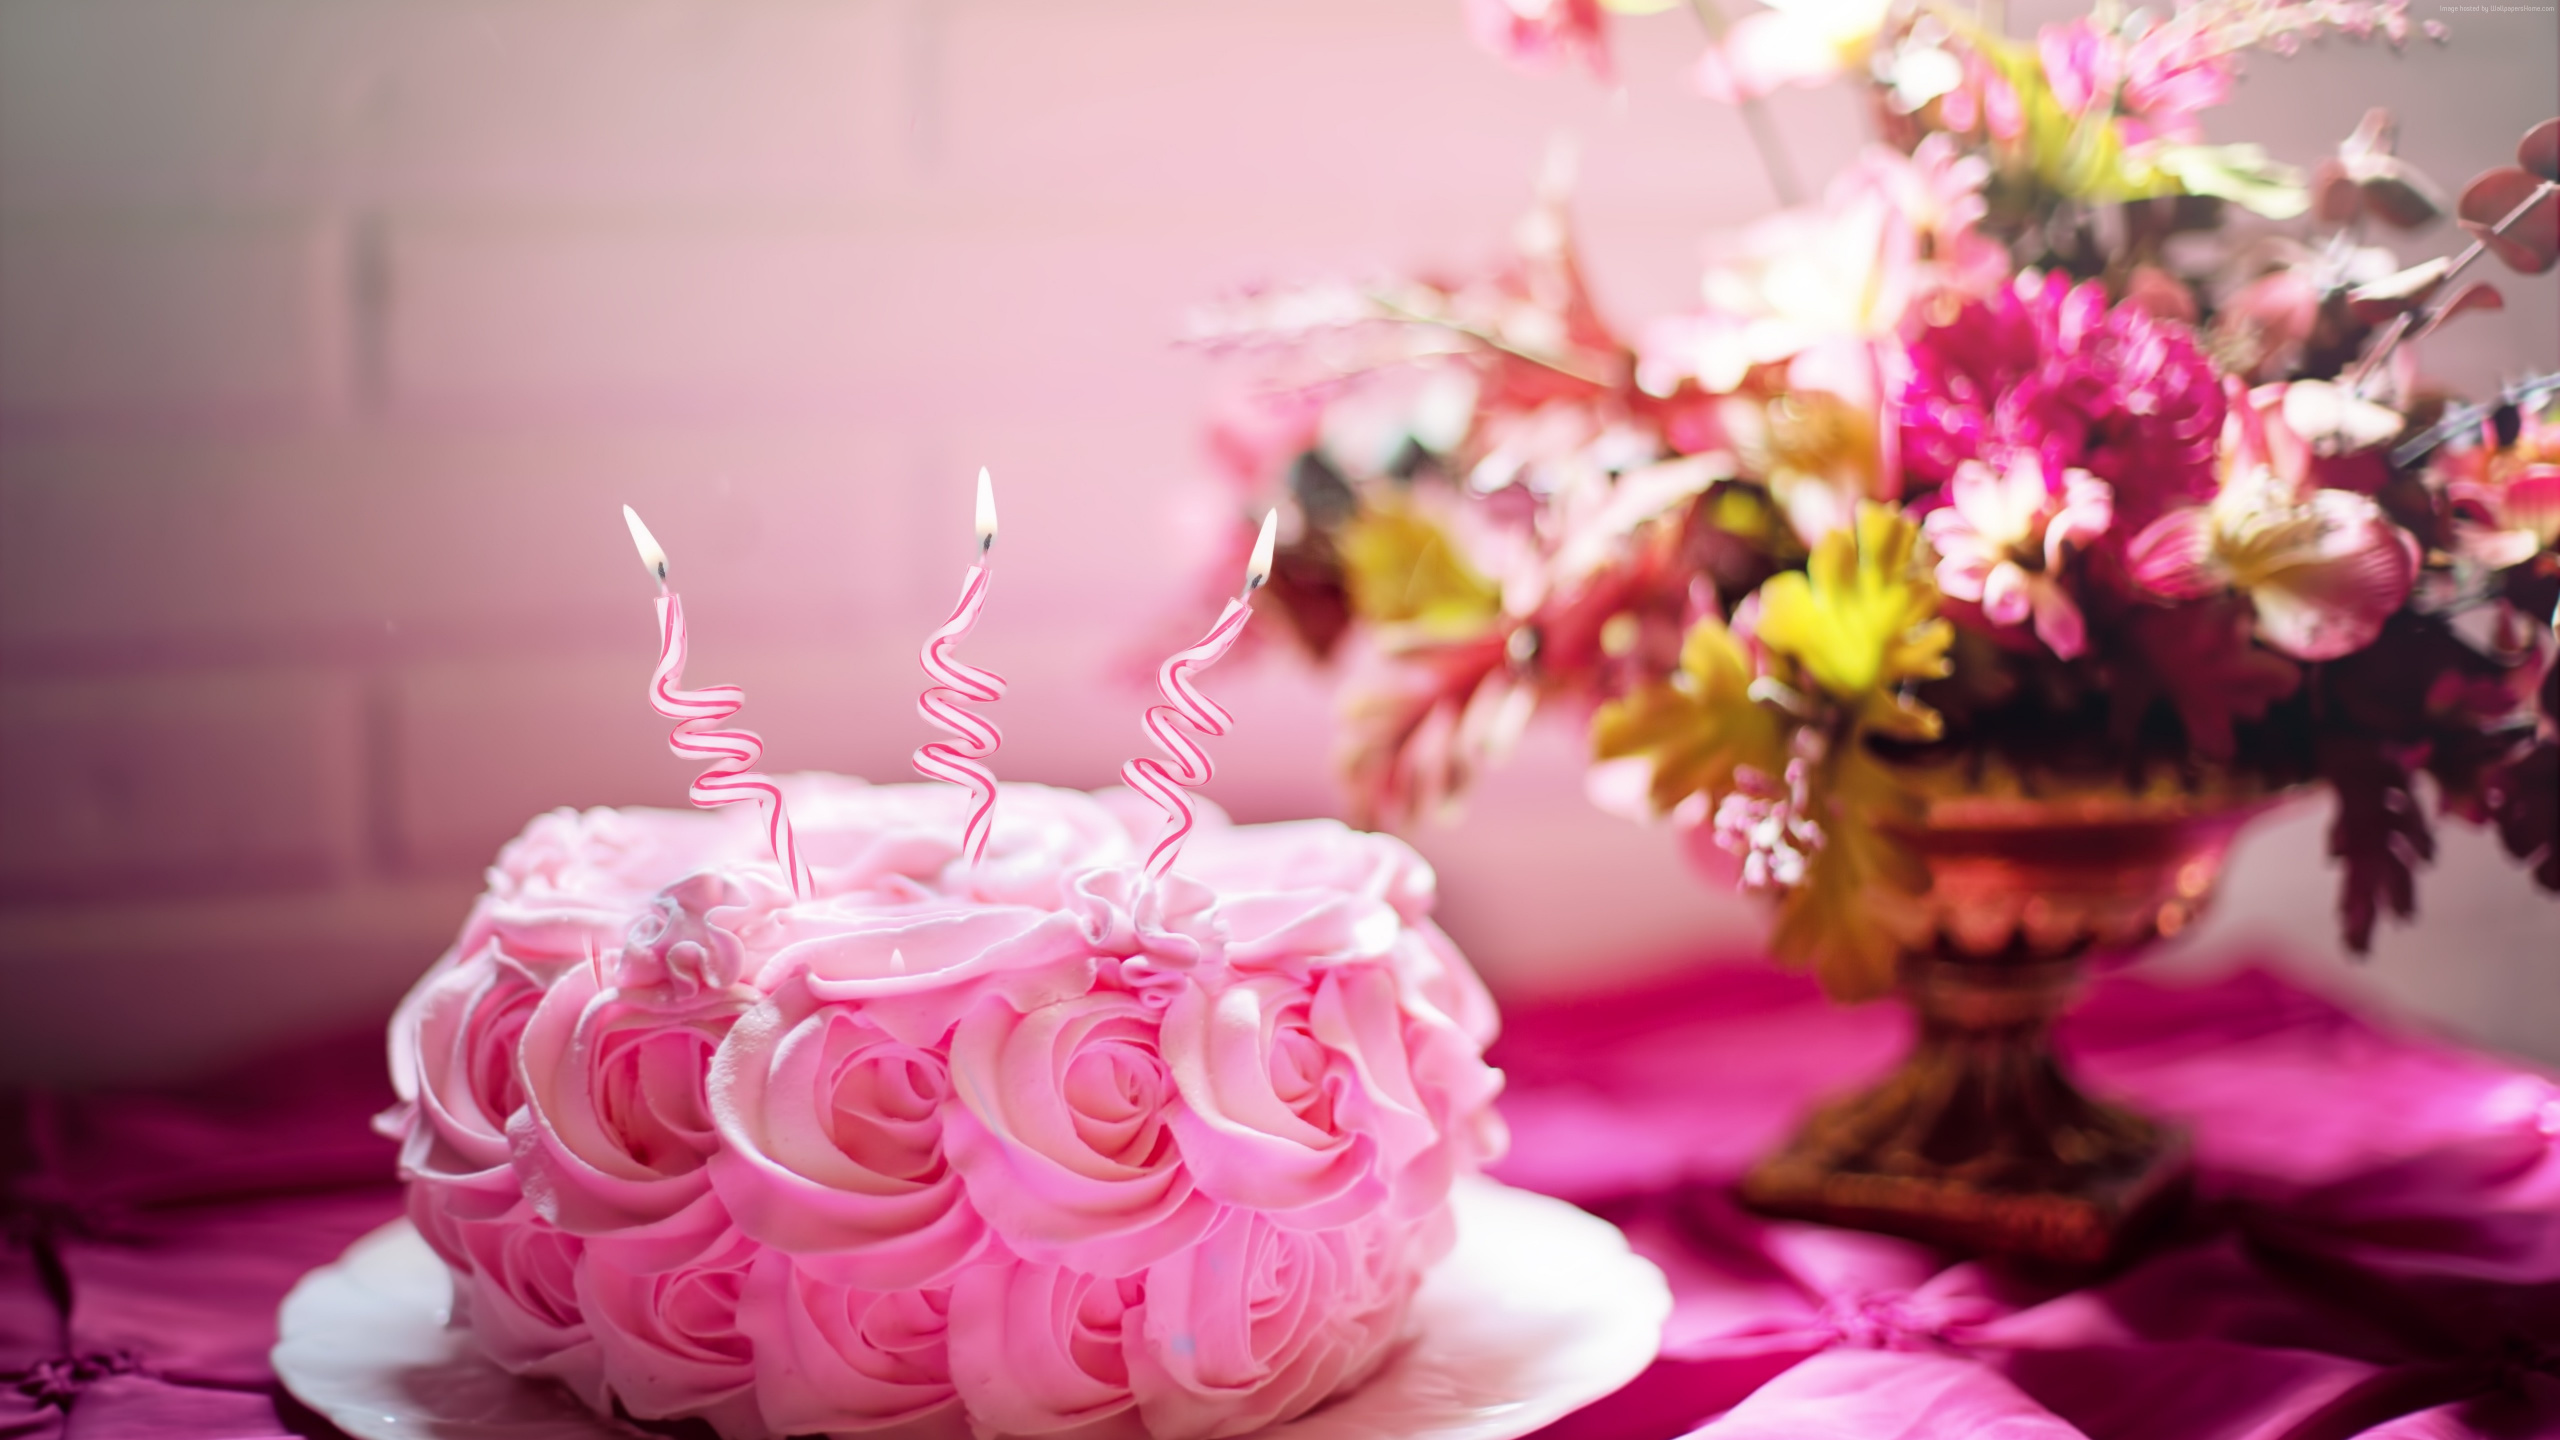 结冰, 生日蛋糕, 蛋糕装饰, 粉红色, 甜头 壁纸 2560x1440 允许